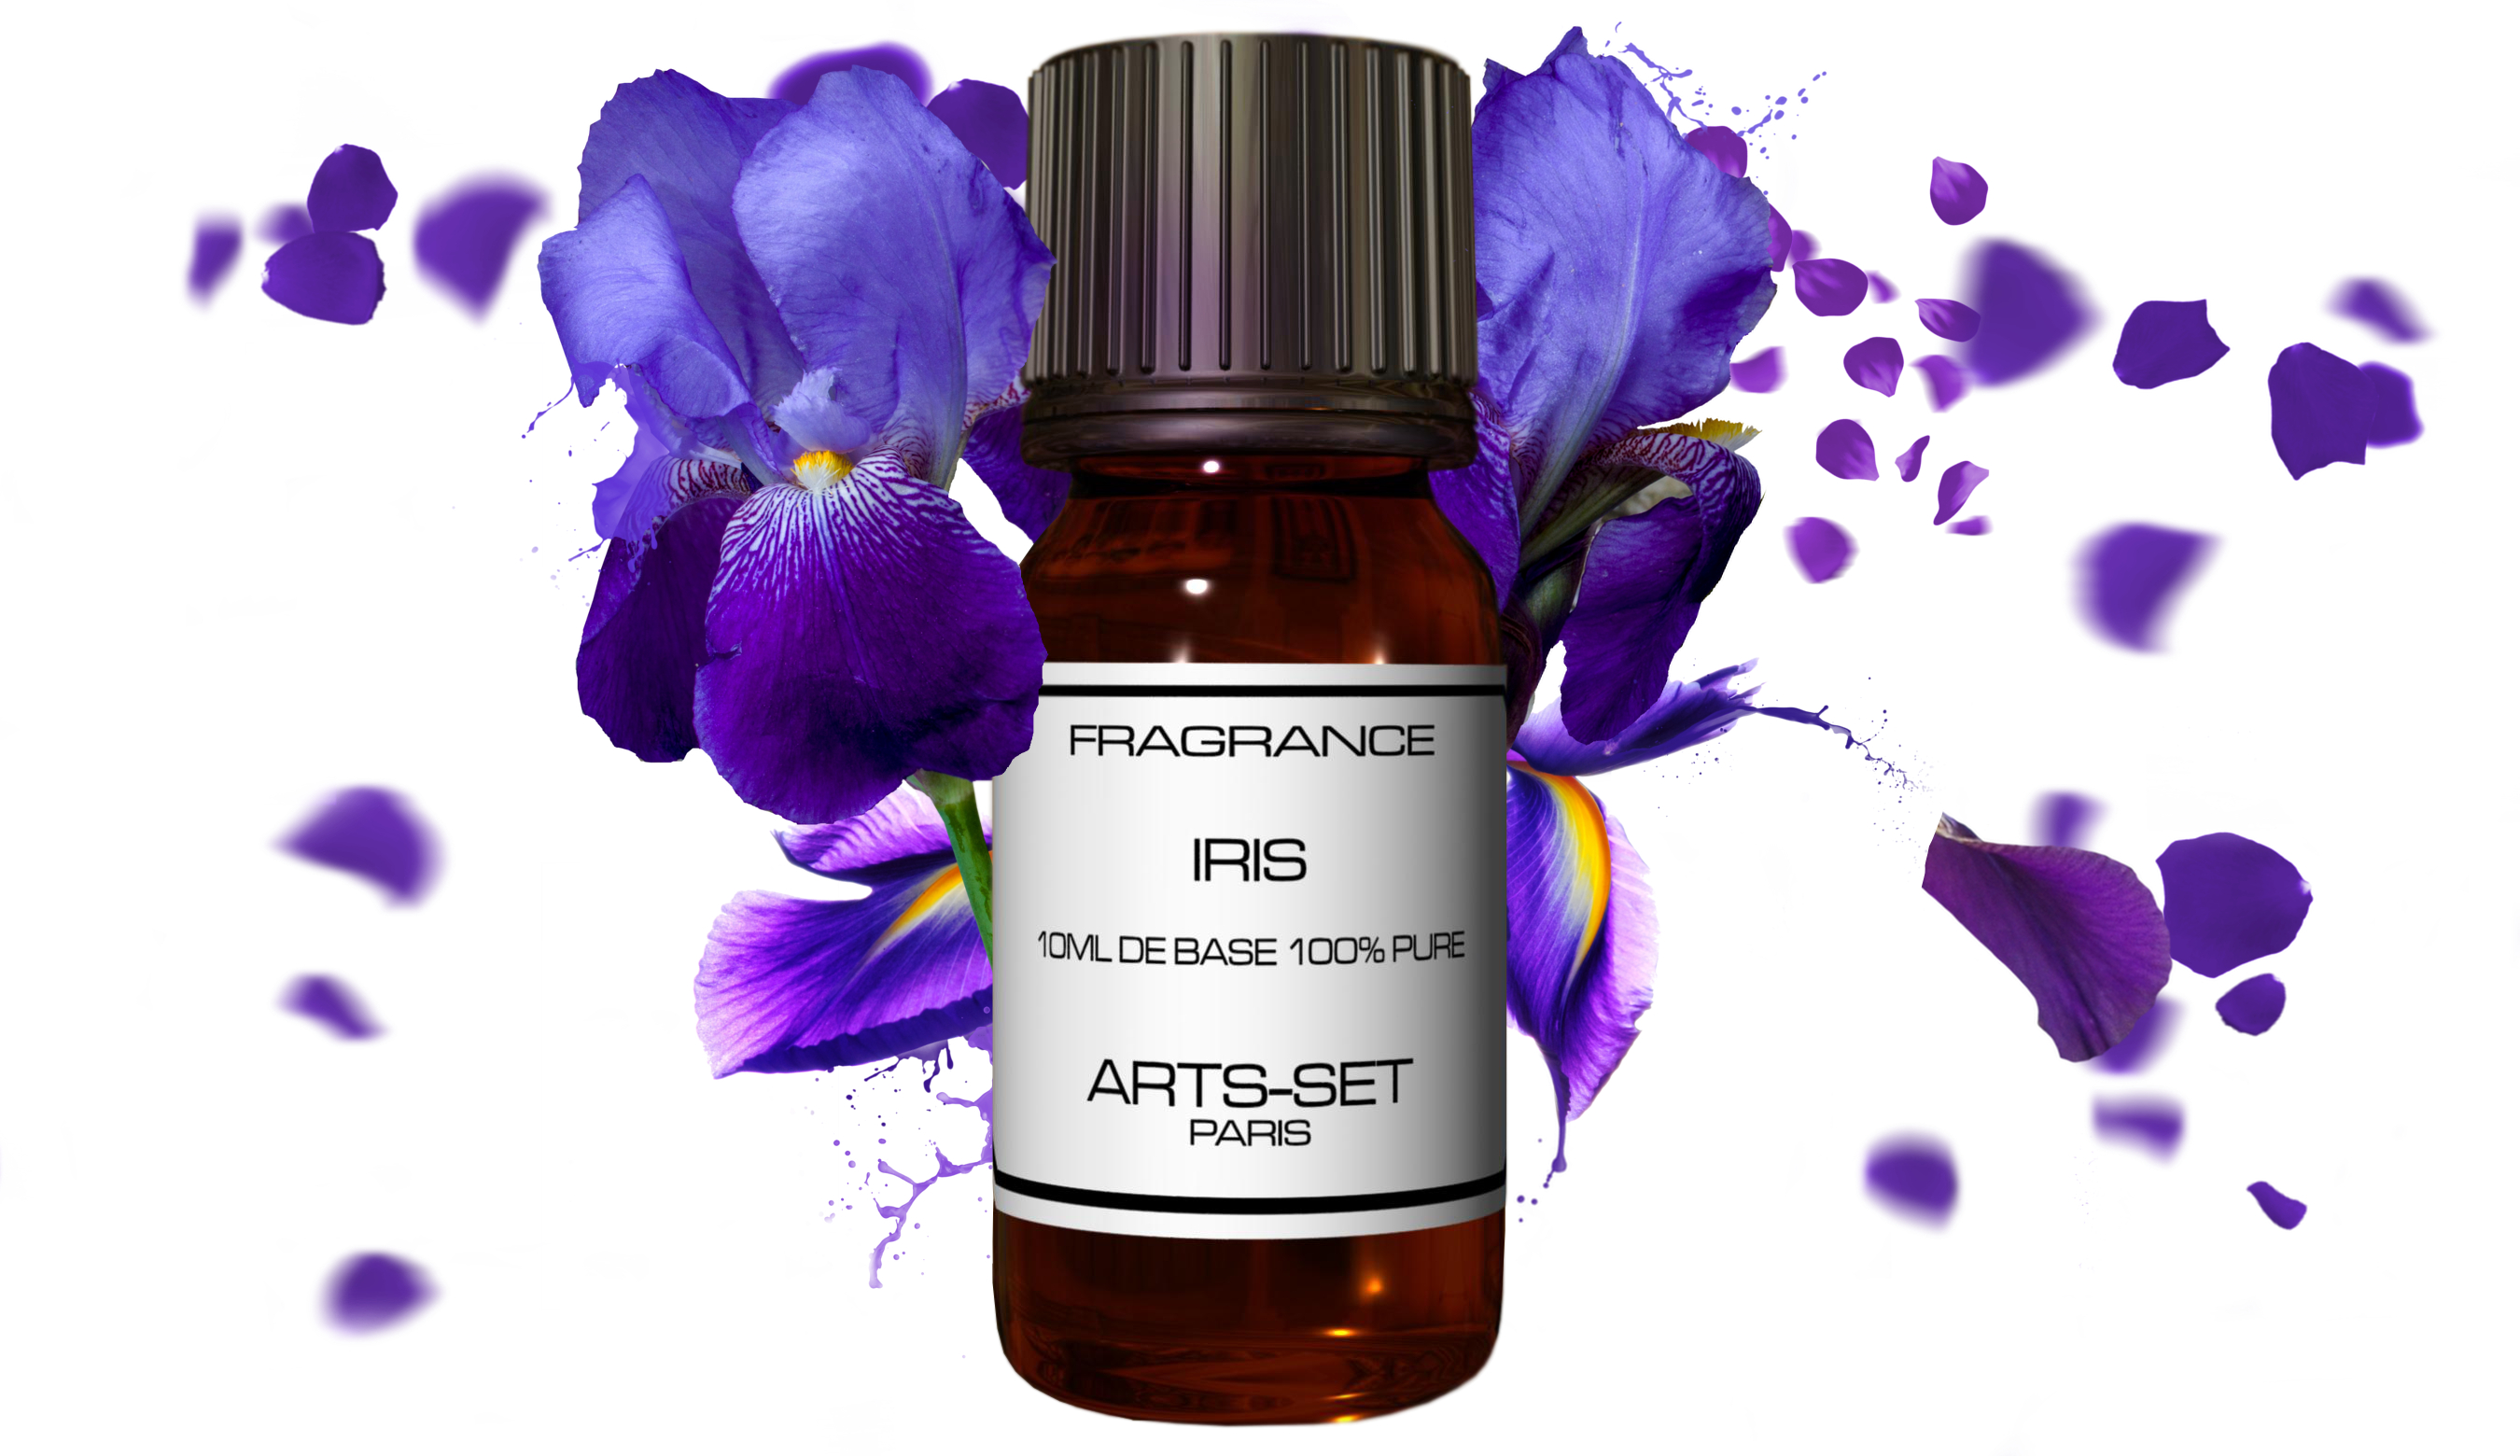 La Fragrance Iris Arts-Set pour un créer un Parfum Floral